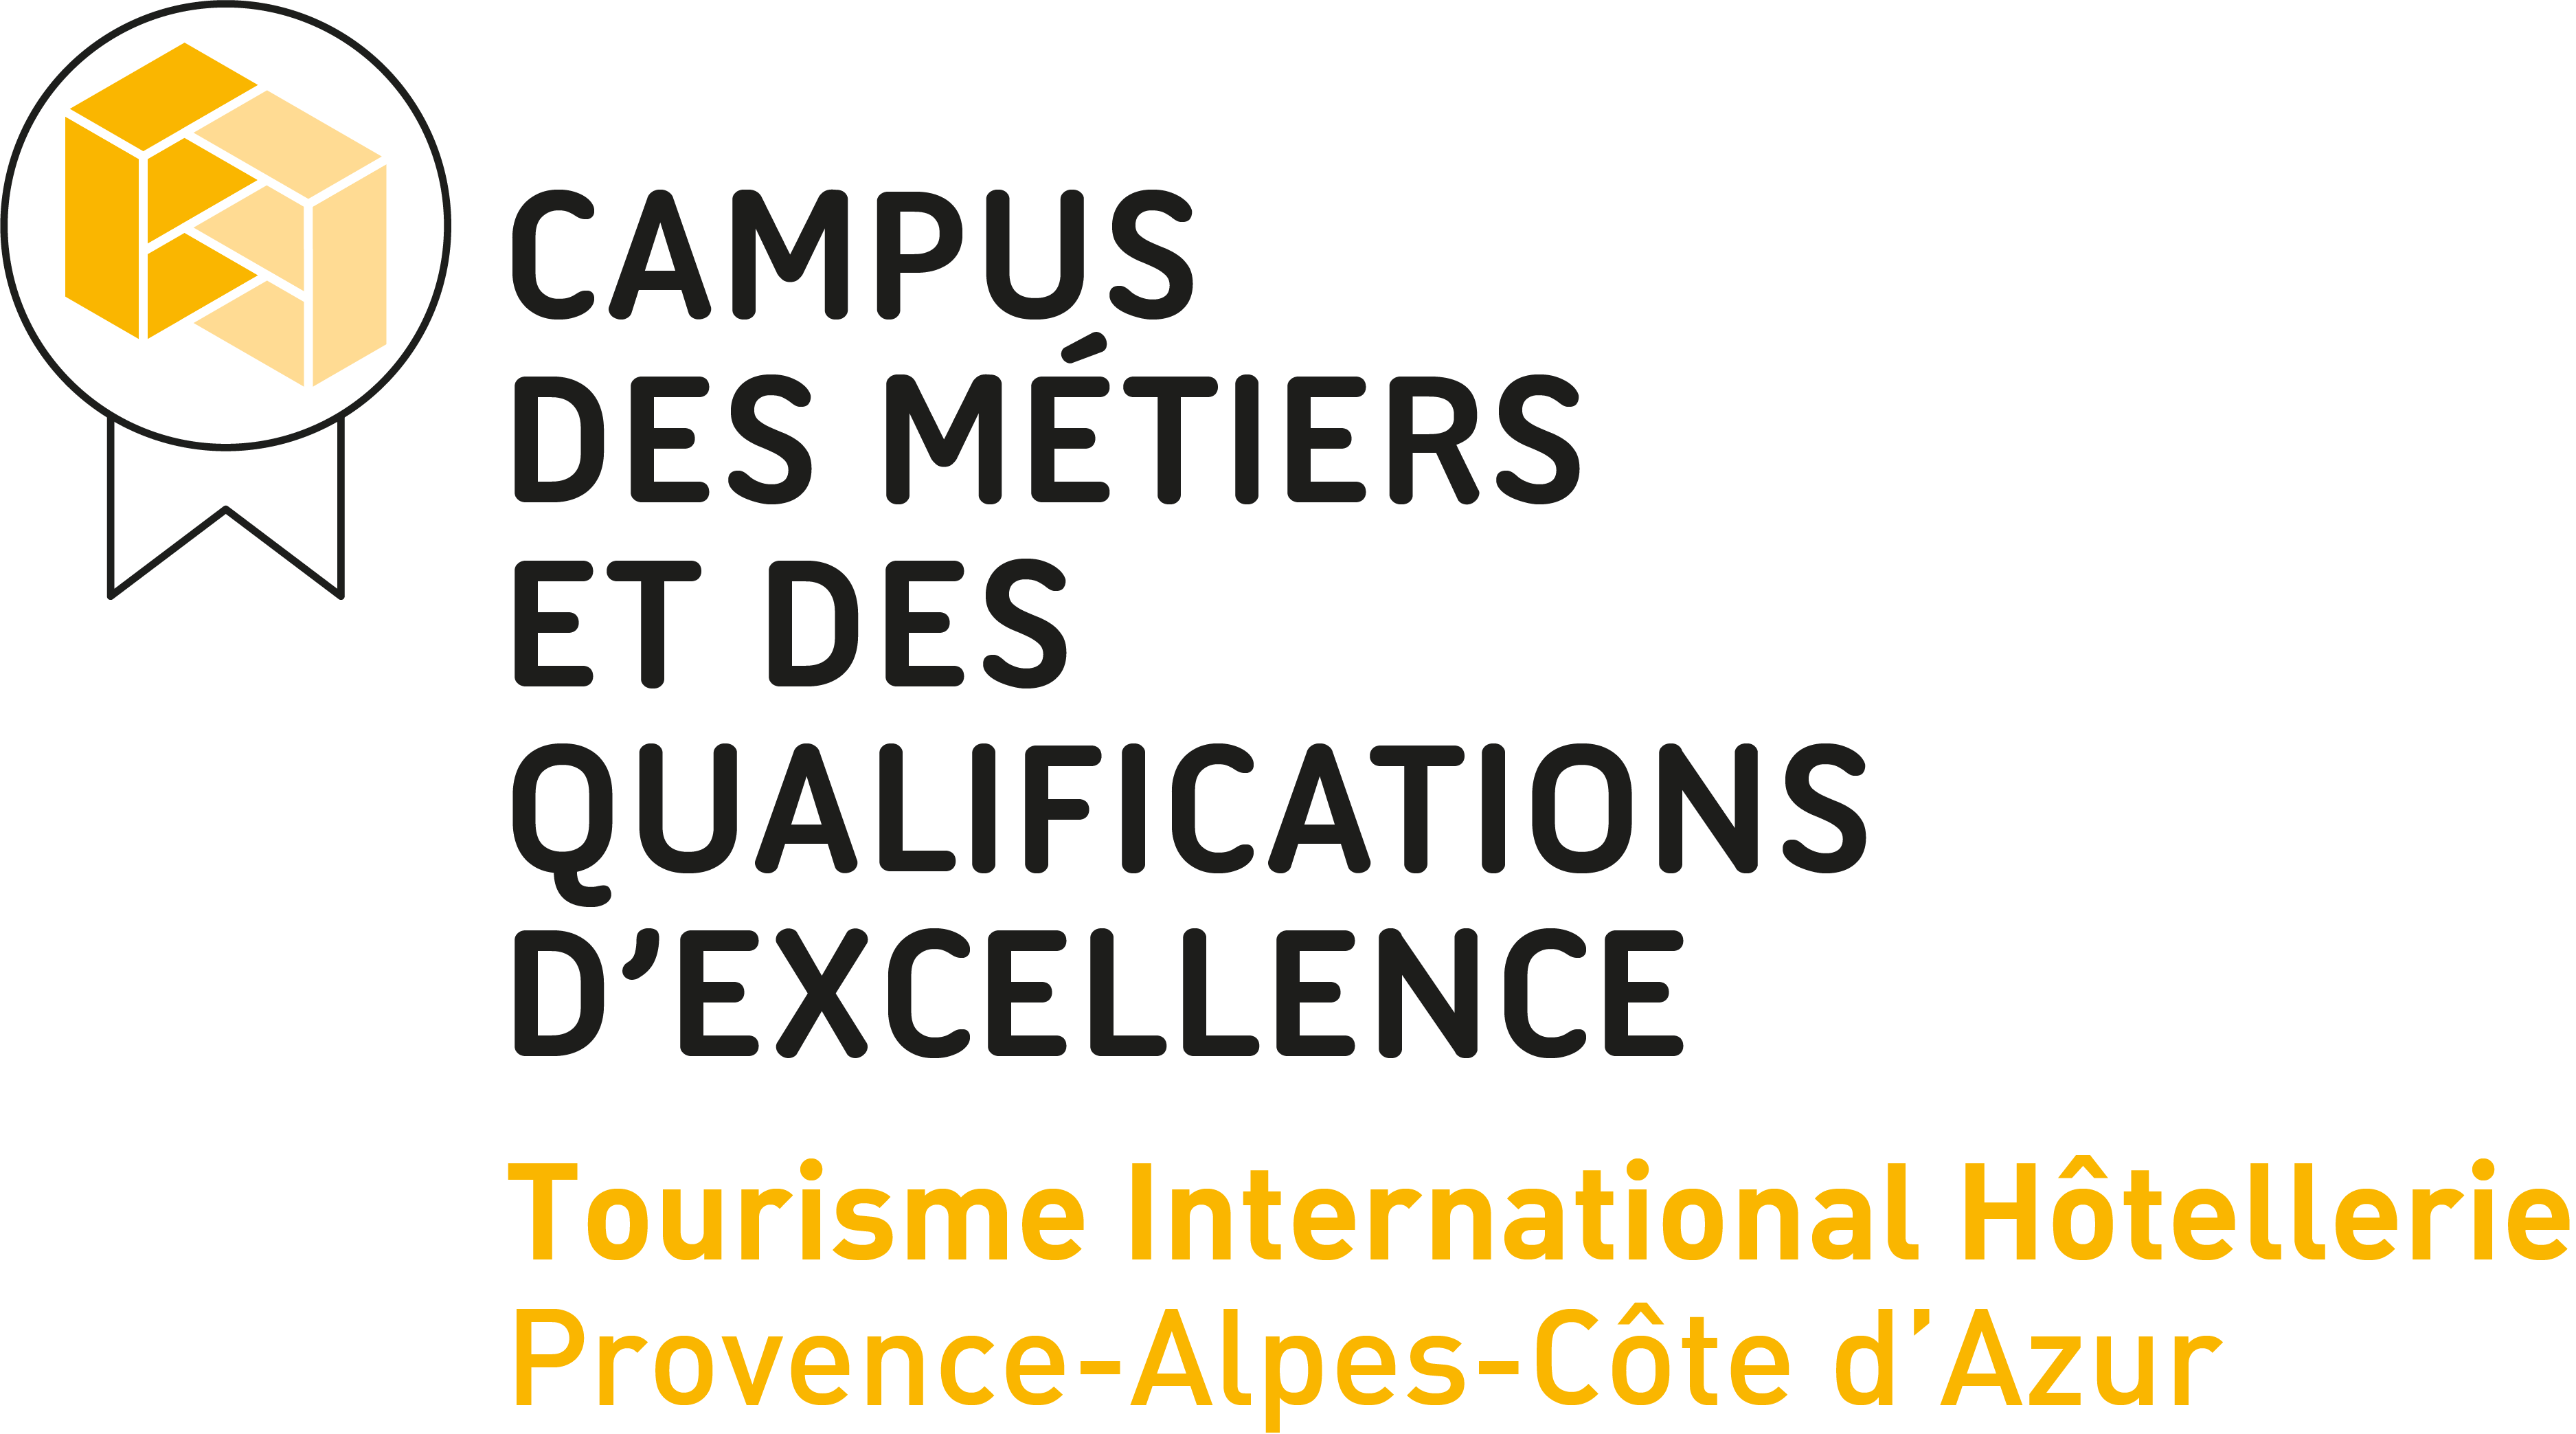 Campus des métiers et des qualifications d'excellence Tourisme International Hôtellerie Région Sud